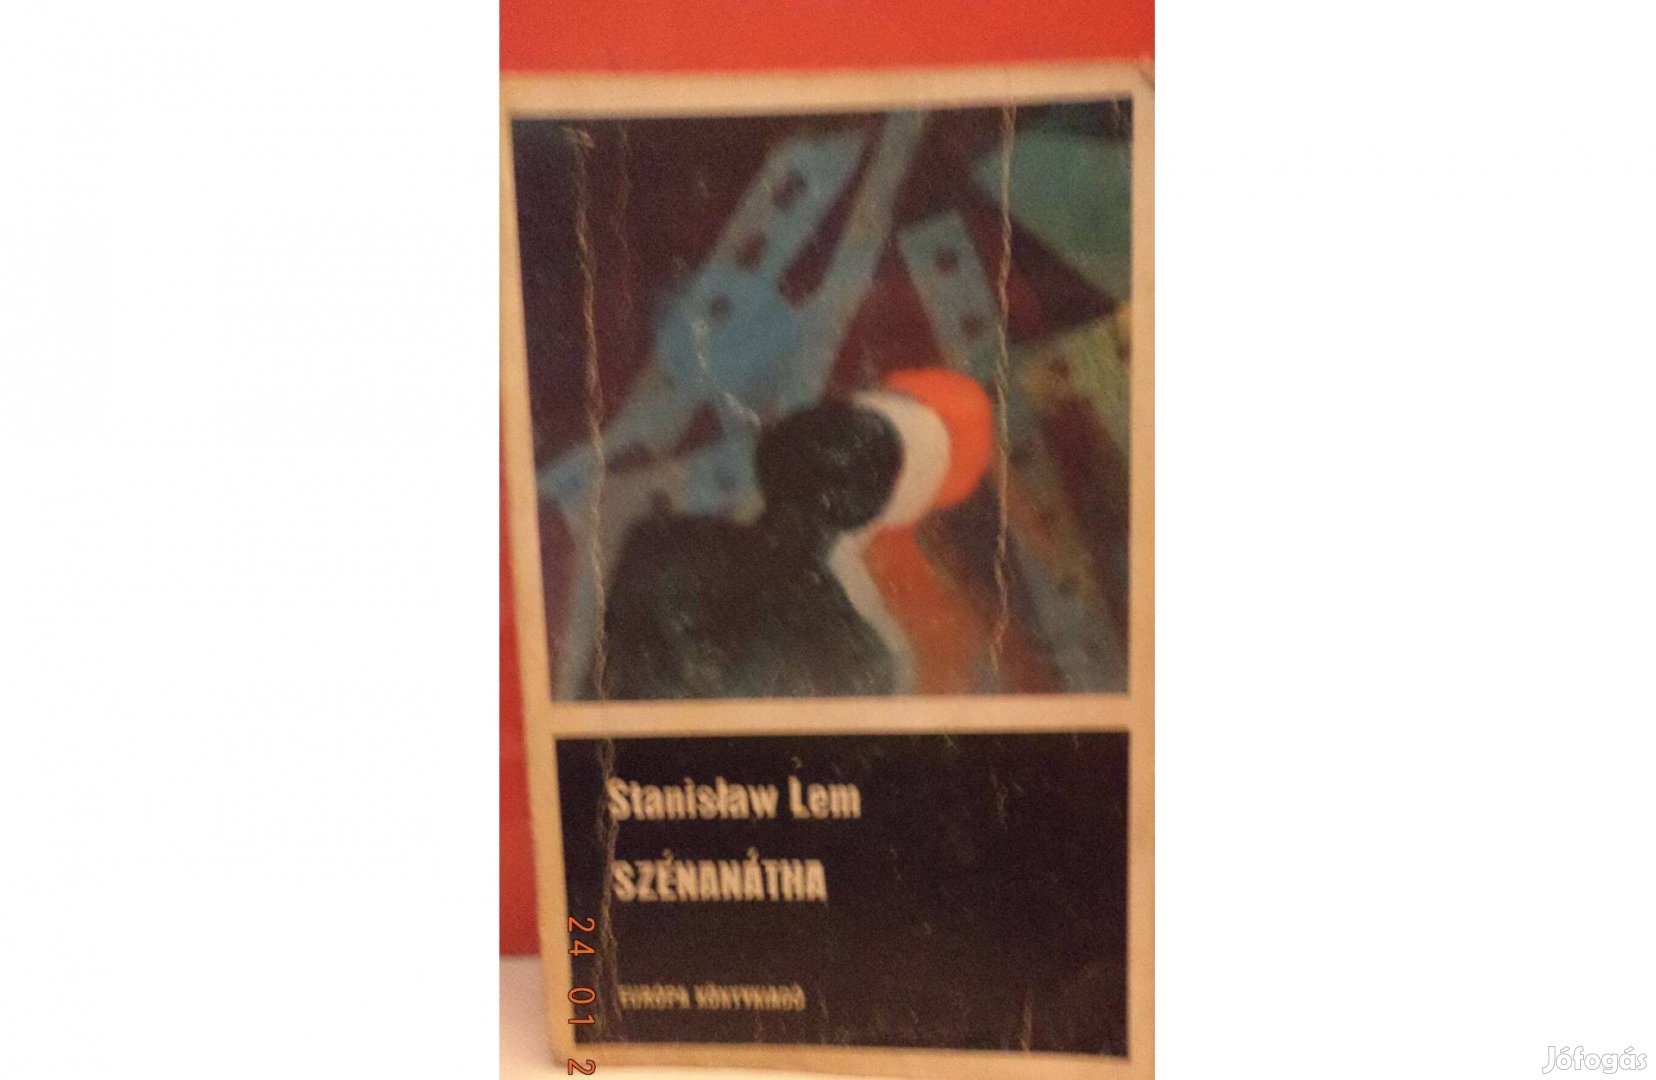 Stanislaw Lem: Szénanátha